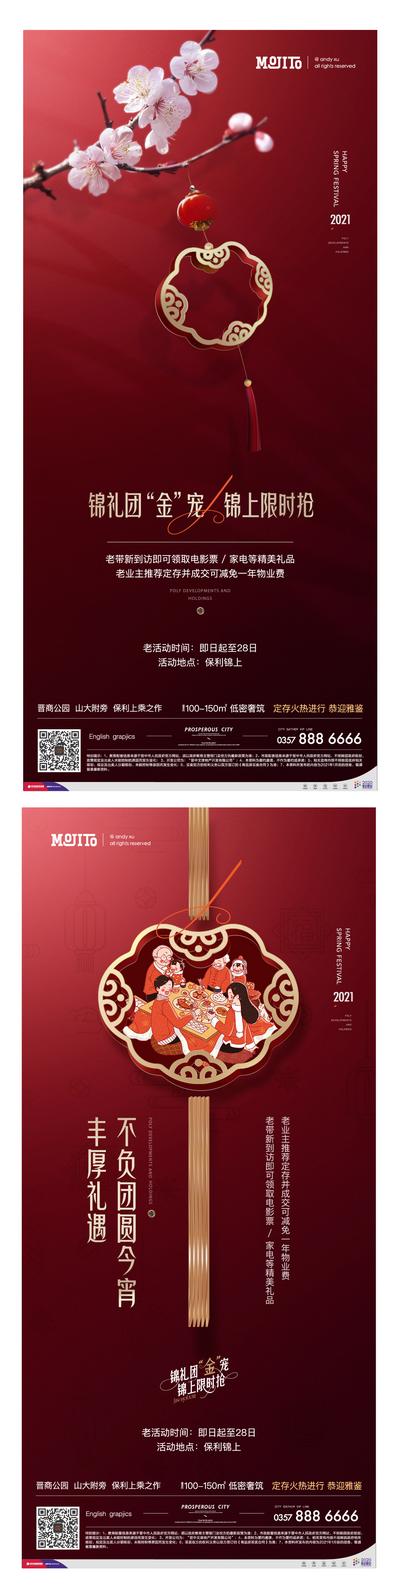 南门网 海报  地产 中国传统节日  元宵节 红色 梅花  系列  